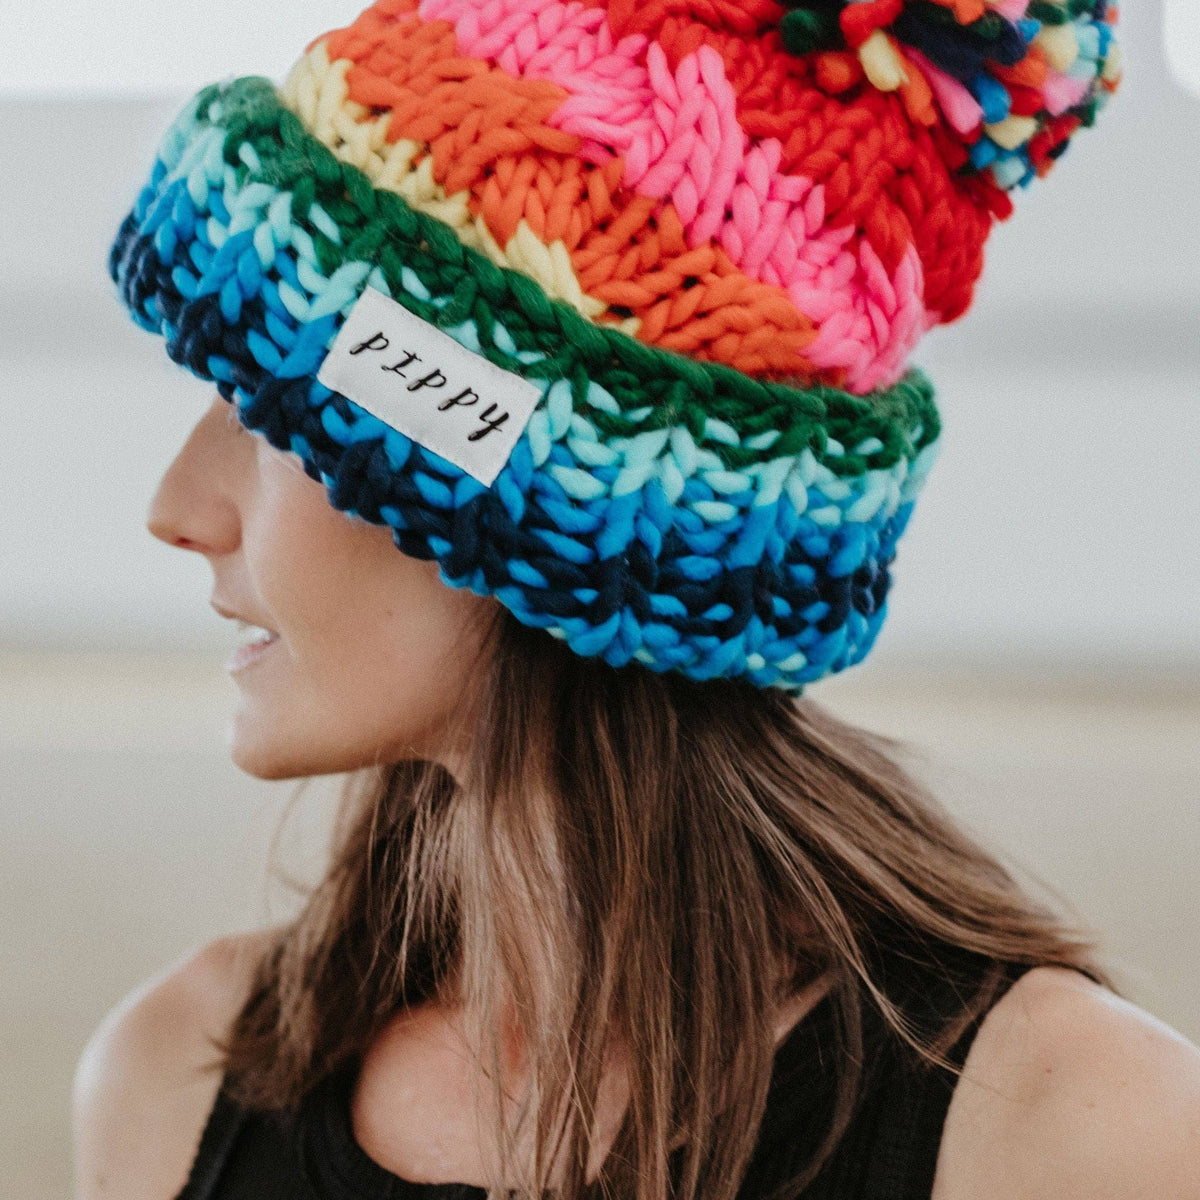 Chunky Rainbow Beanie, Oversized Knitted Hat, Pom-Pom: Rainbow